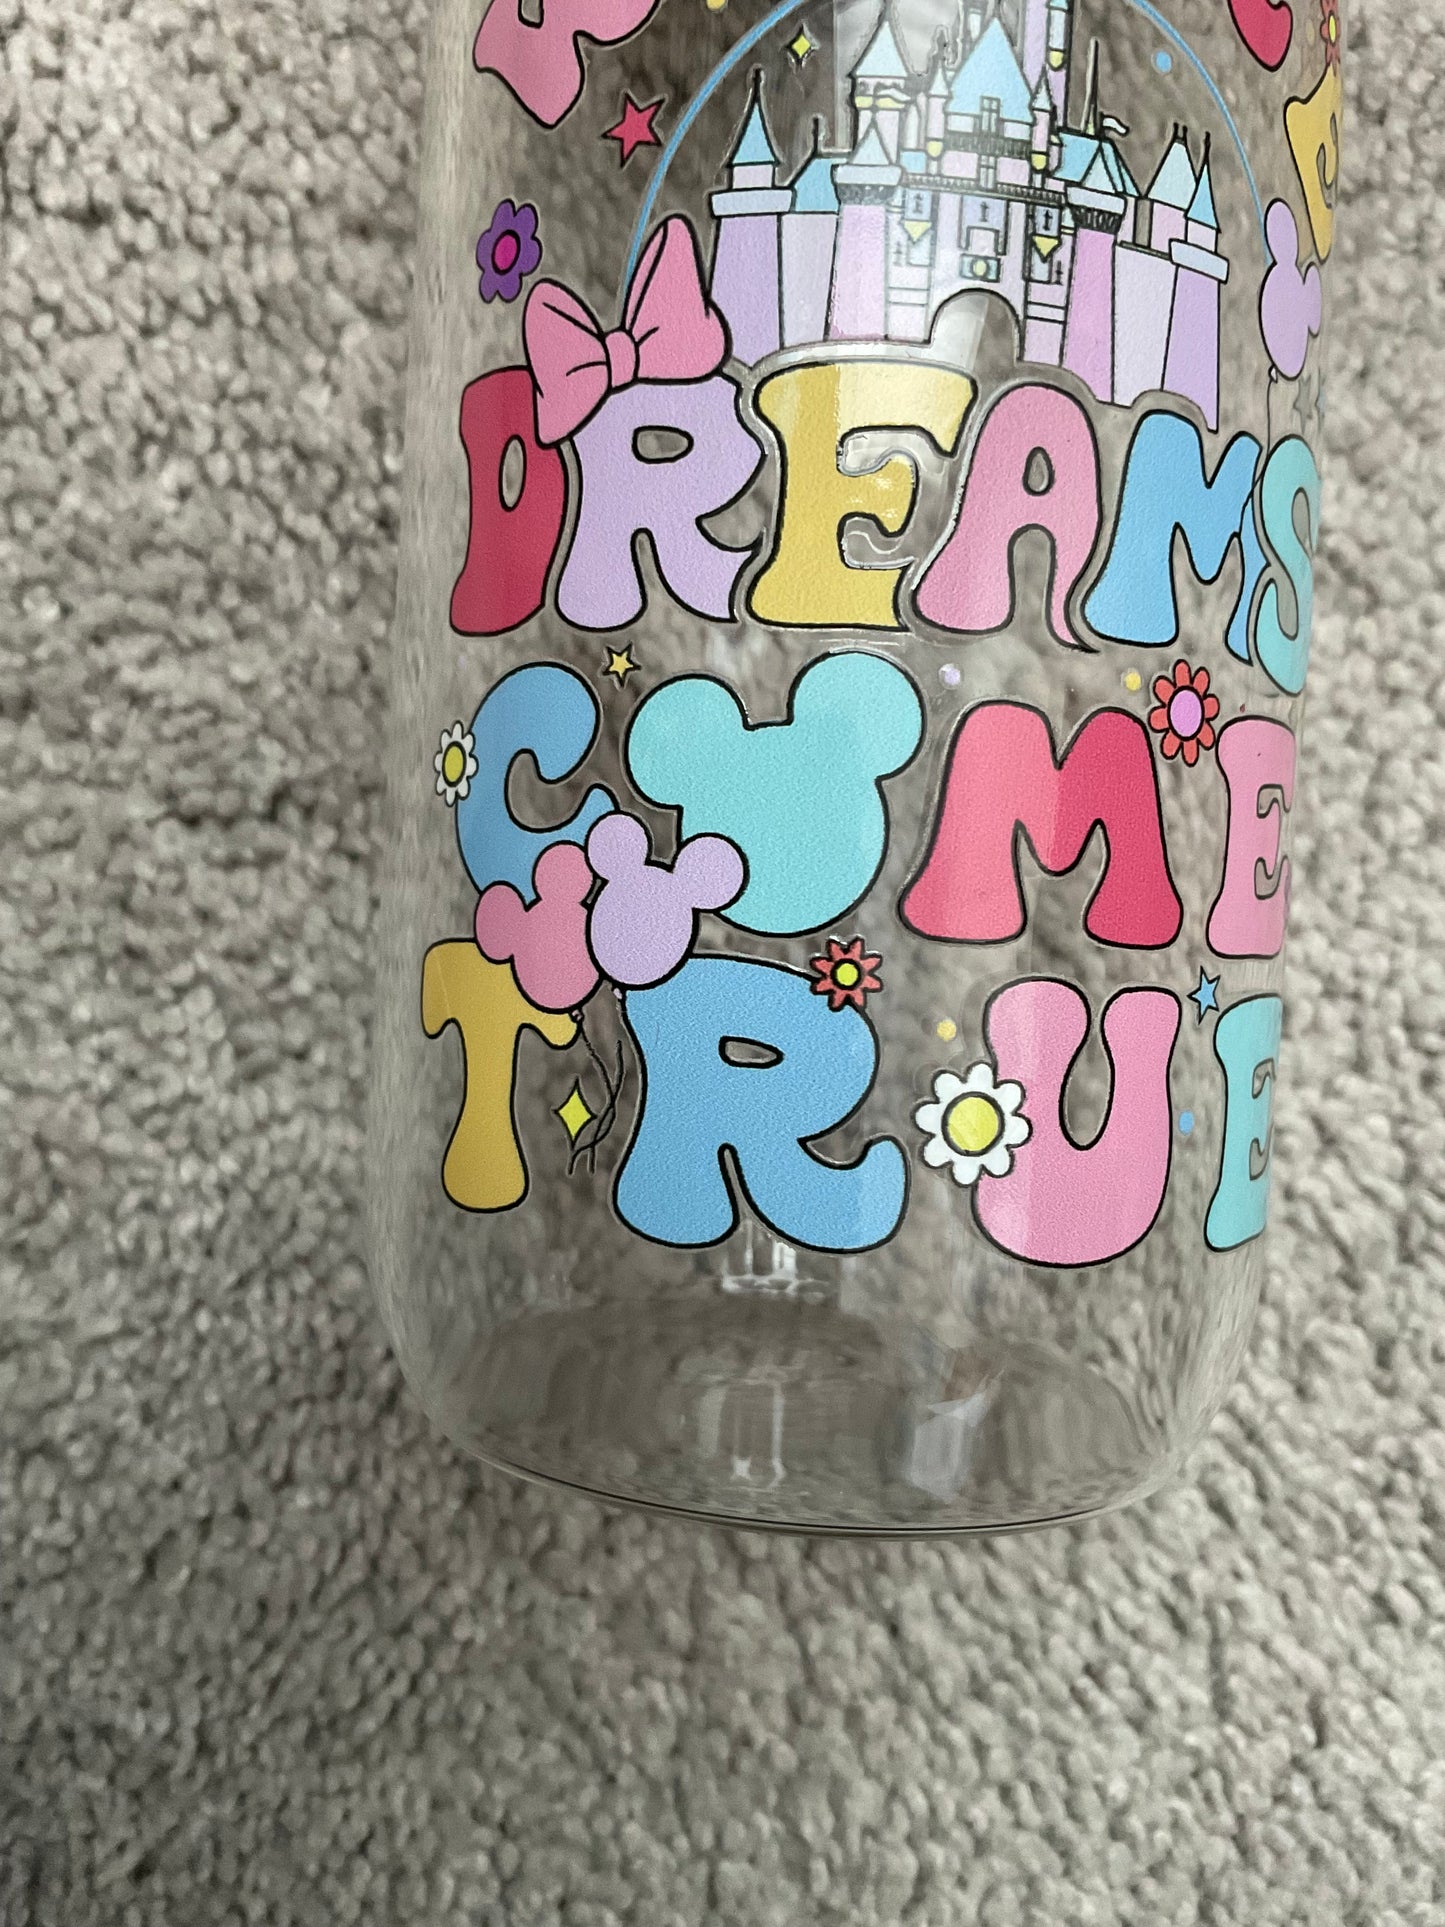 Where dreams come true glass cup